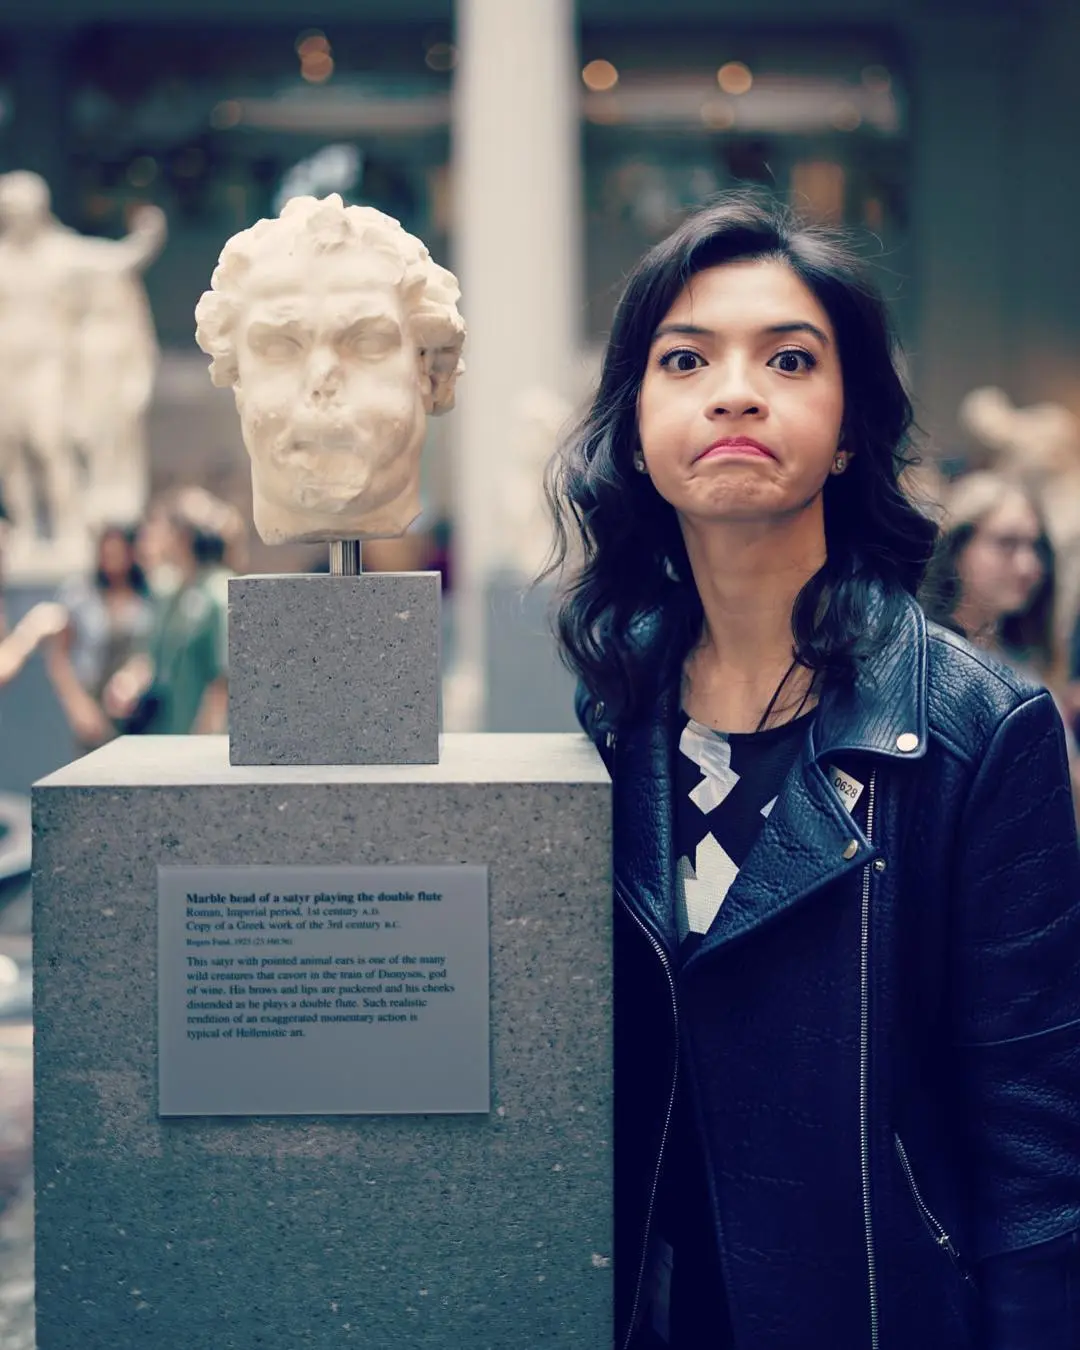 Raline Shah tirukan wajah lucu patung saat berlibur ke Amerika Serikat (Foto: Instagram)